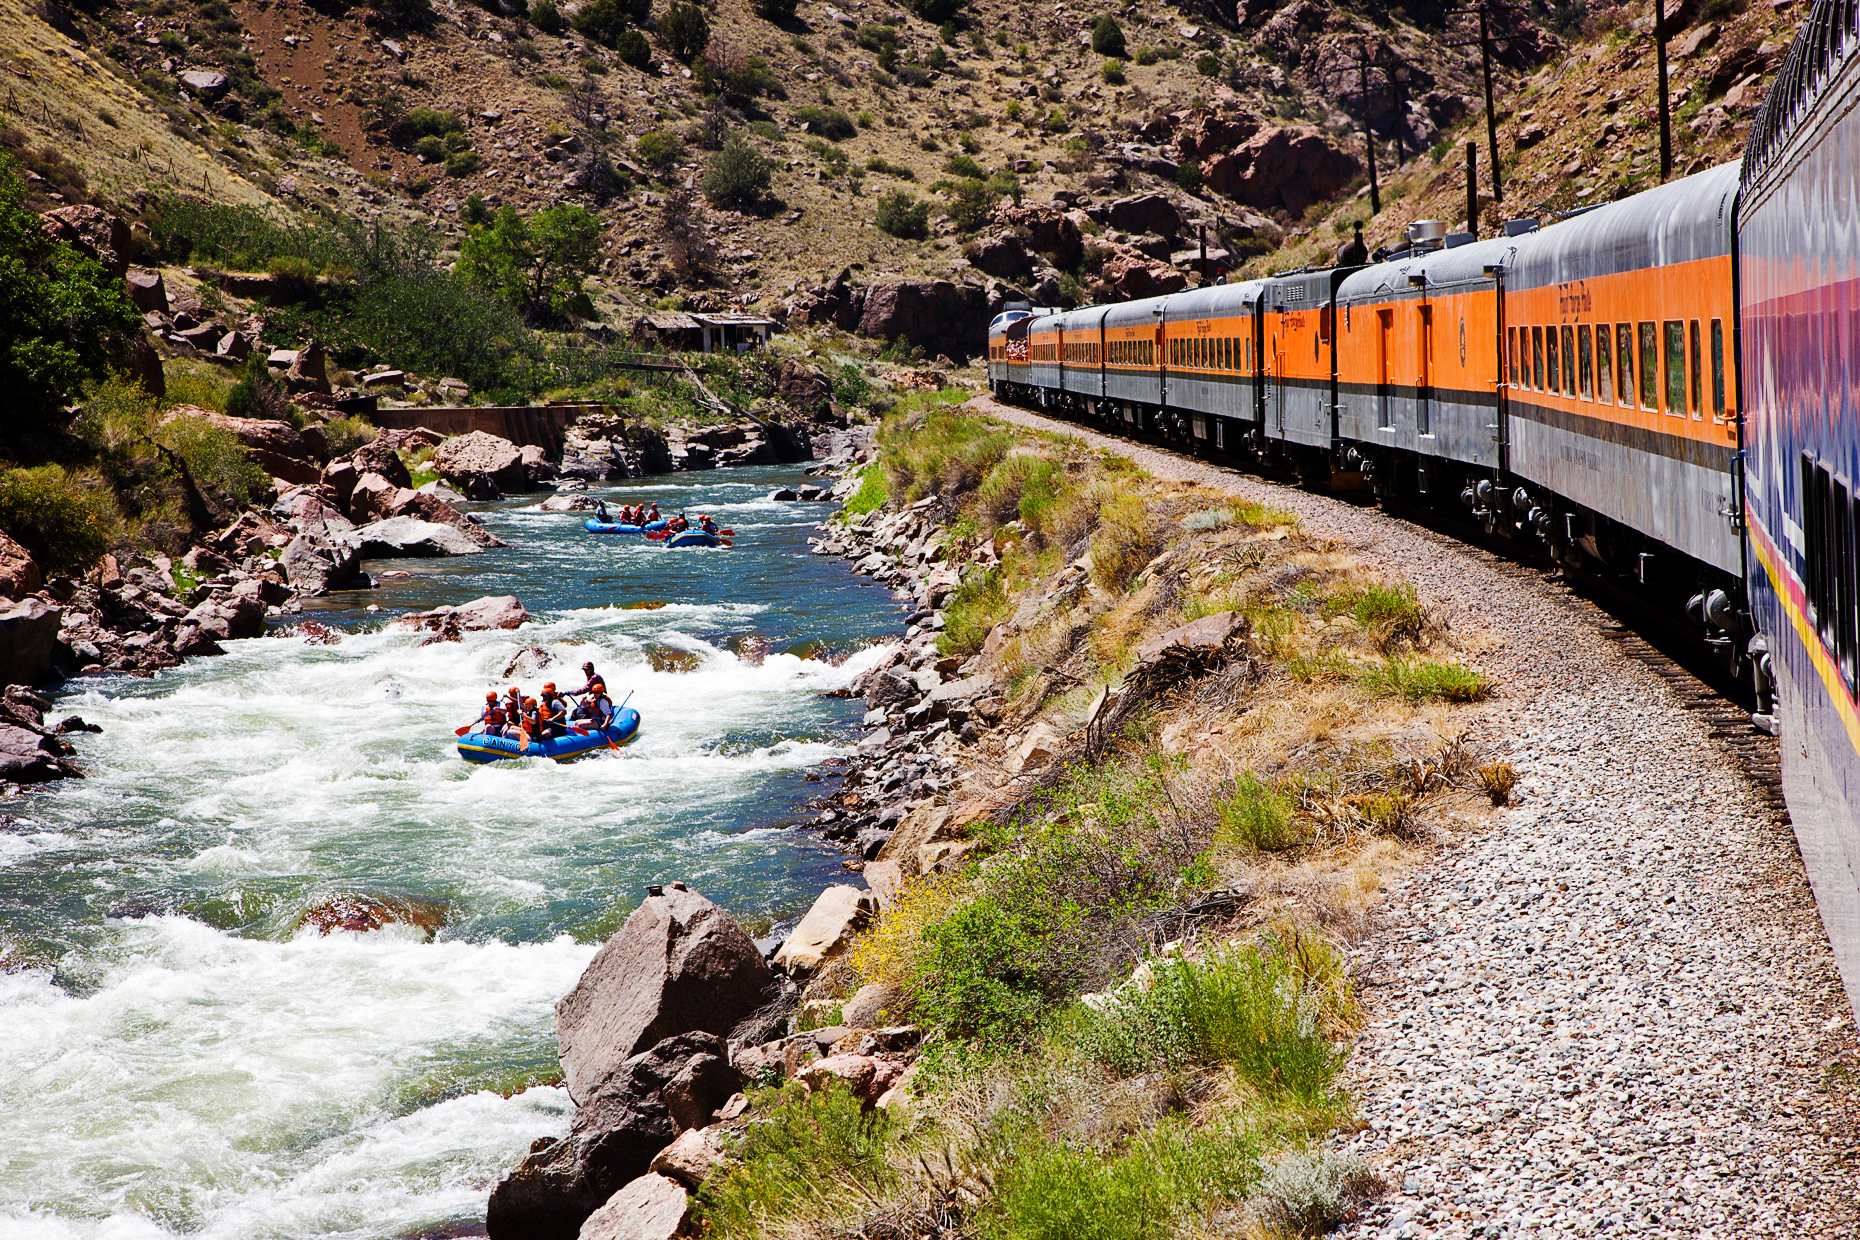 Popular tourist train runs through the 1,000